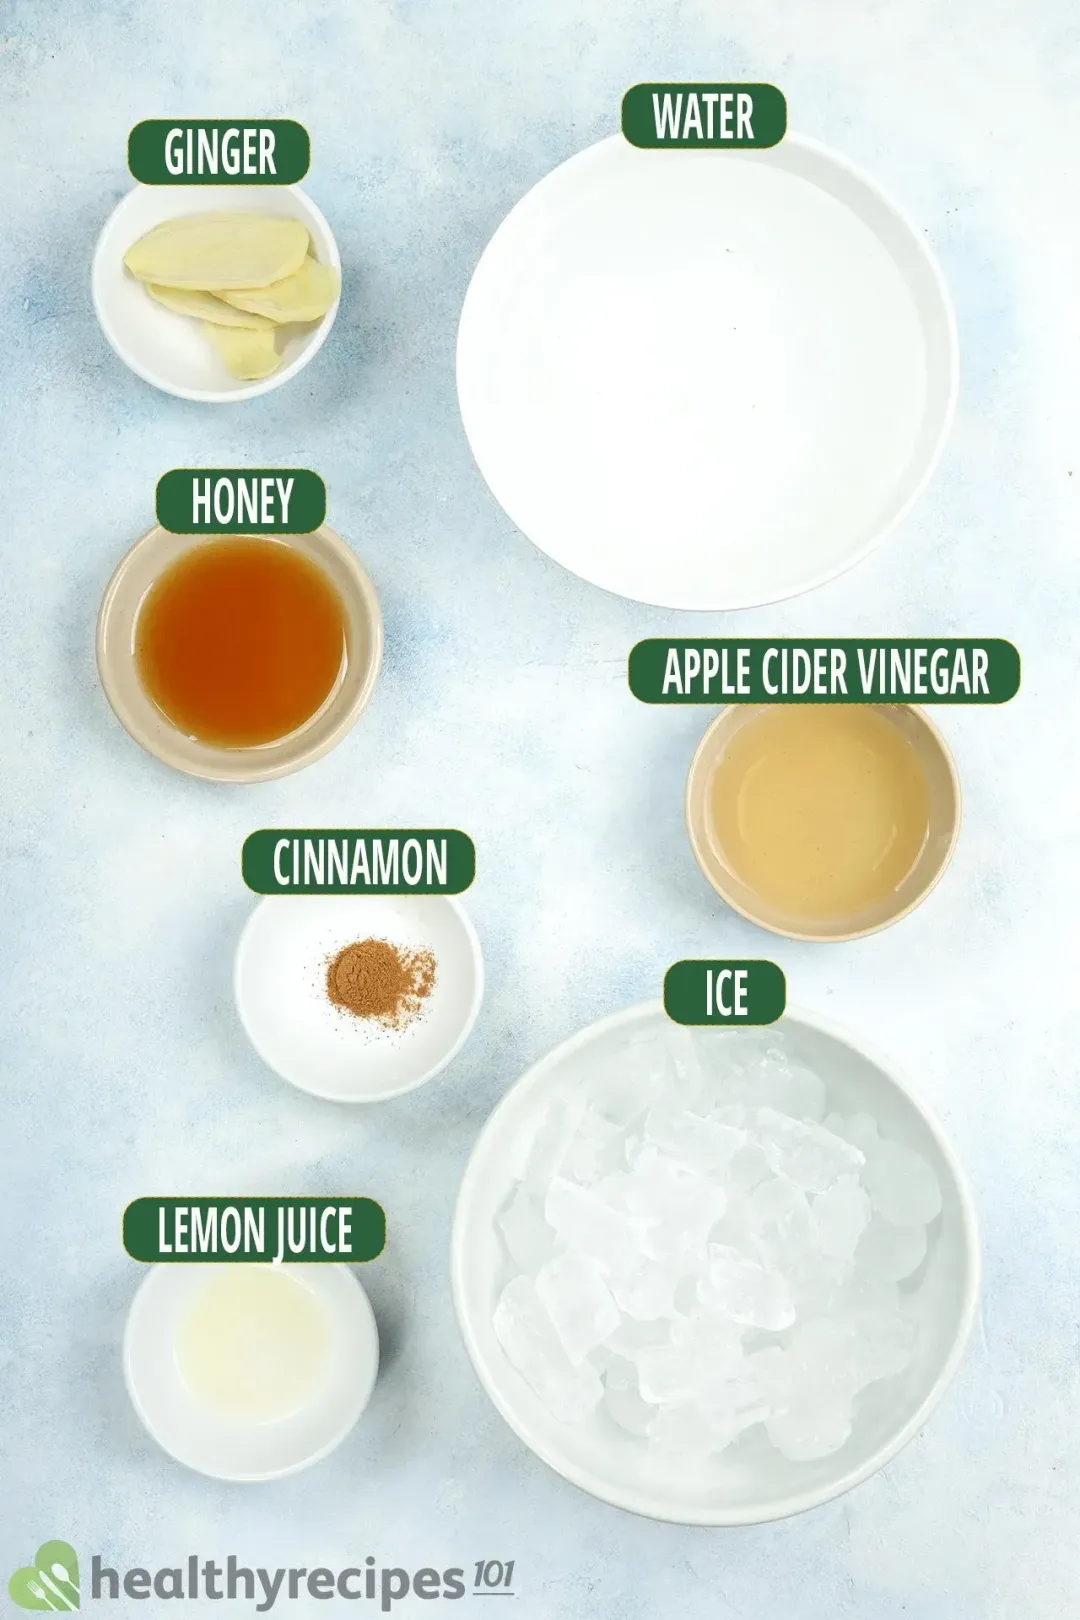 Ingredients in separate bowls: water, apple cider vinegar, ginger, honey, cinnamon, lemon juice, and ice nuggets